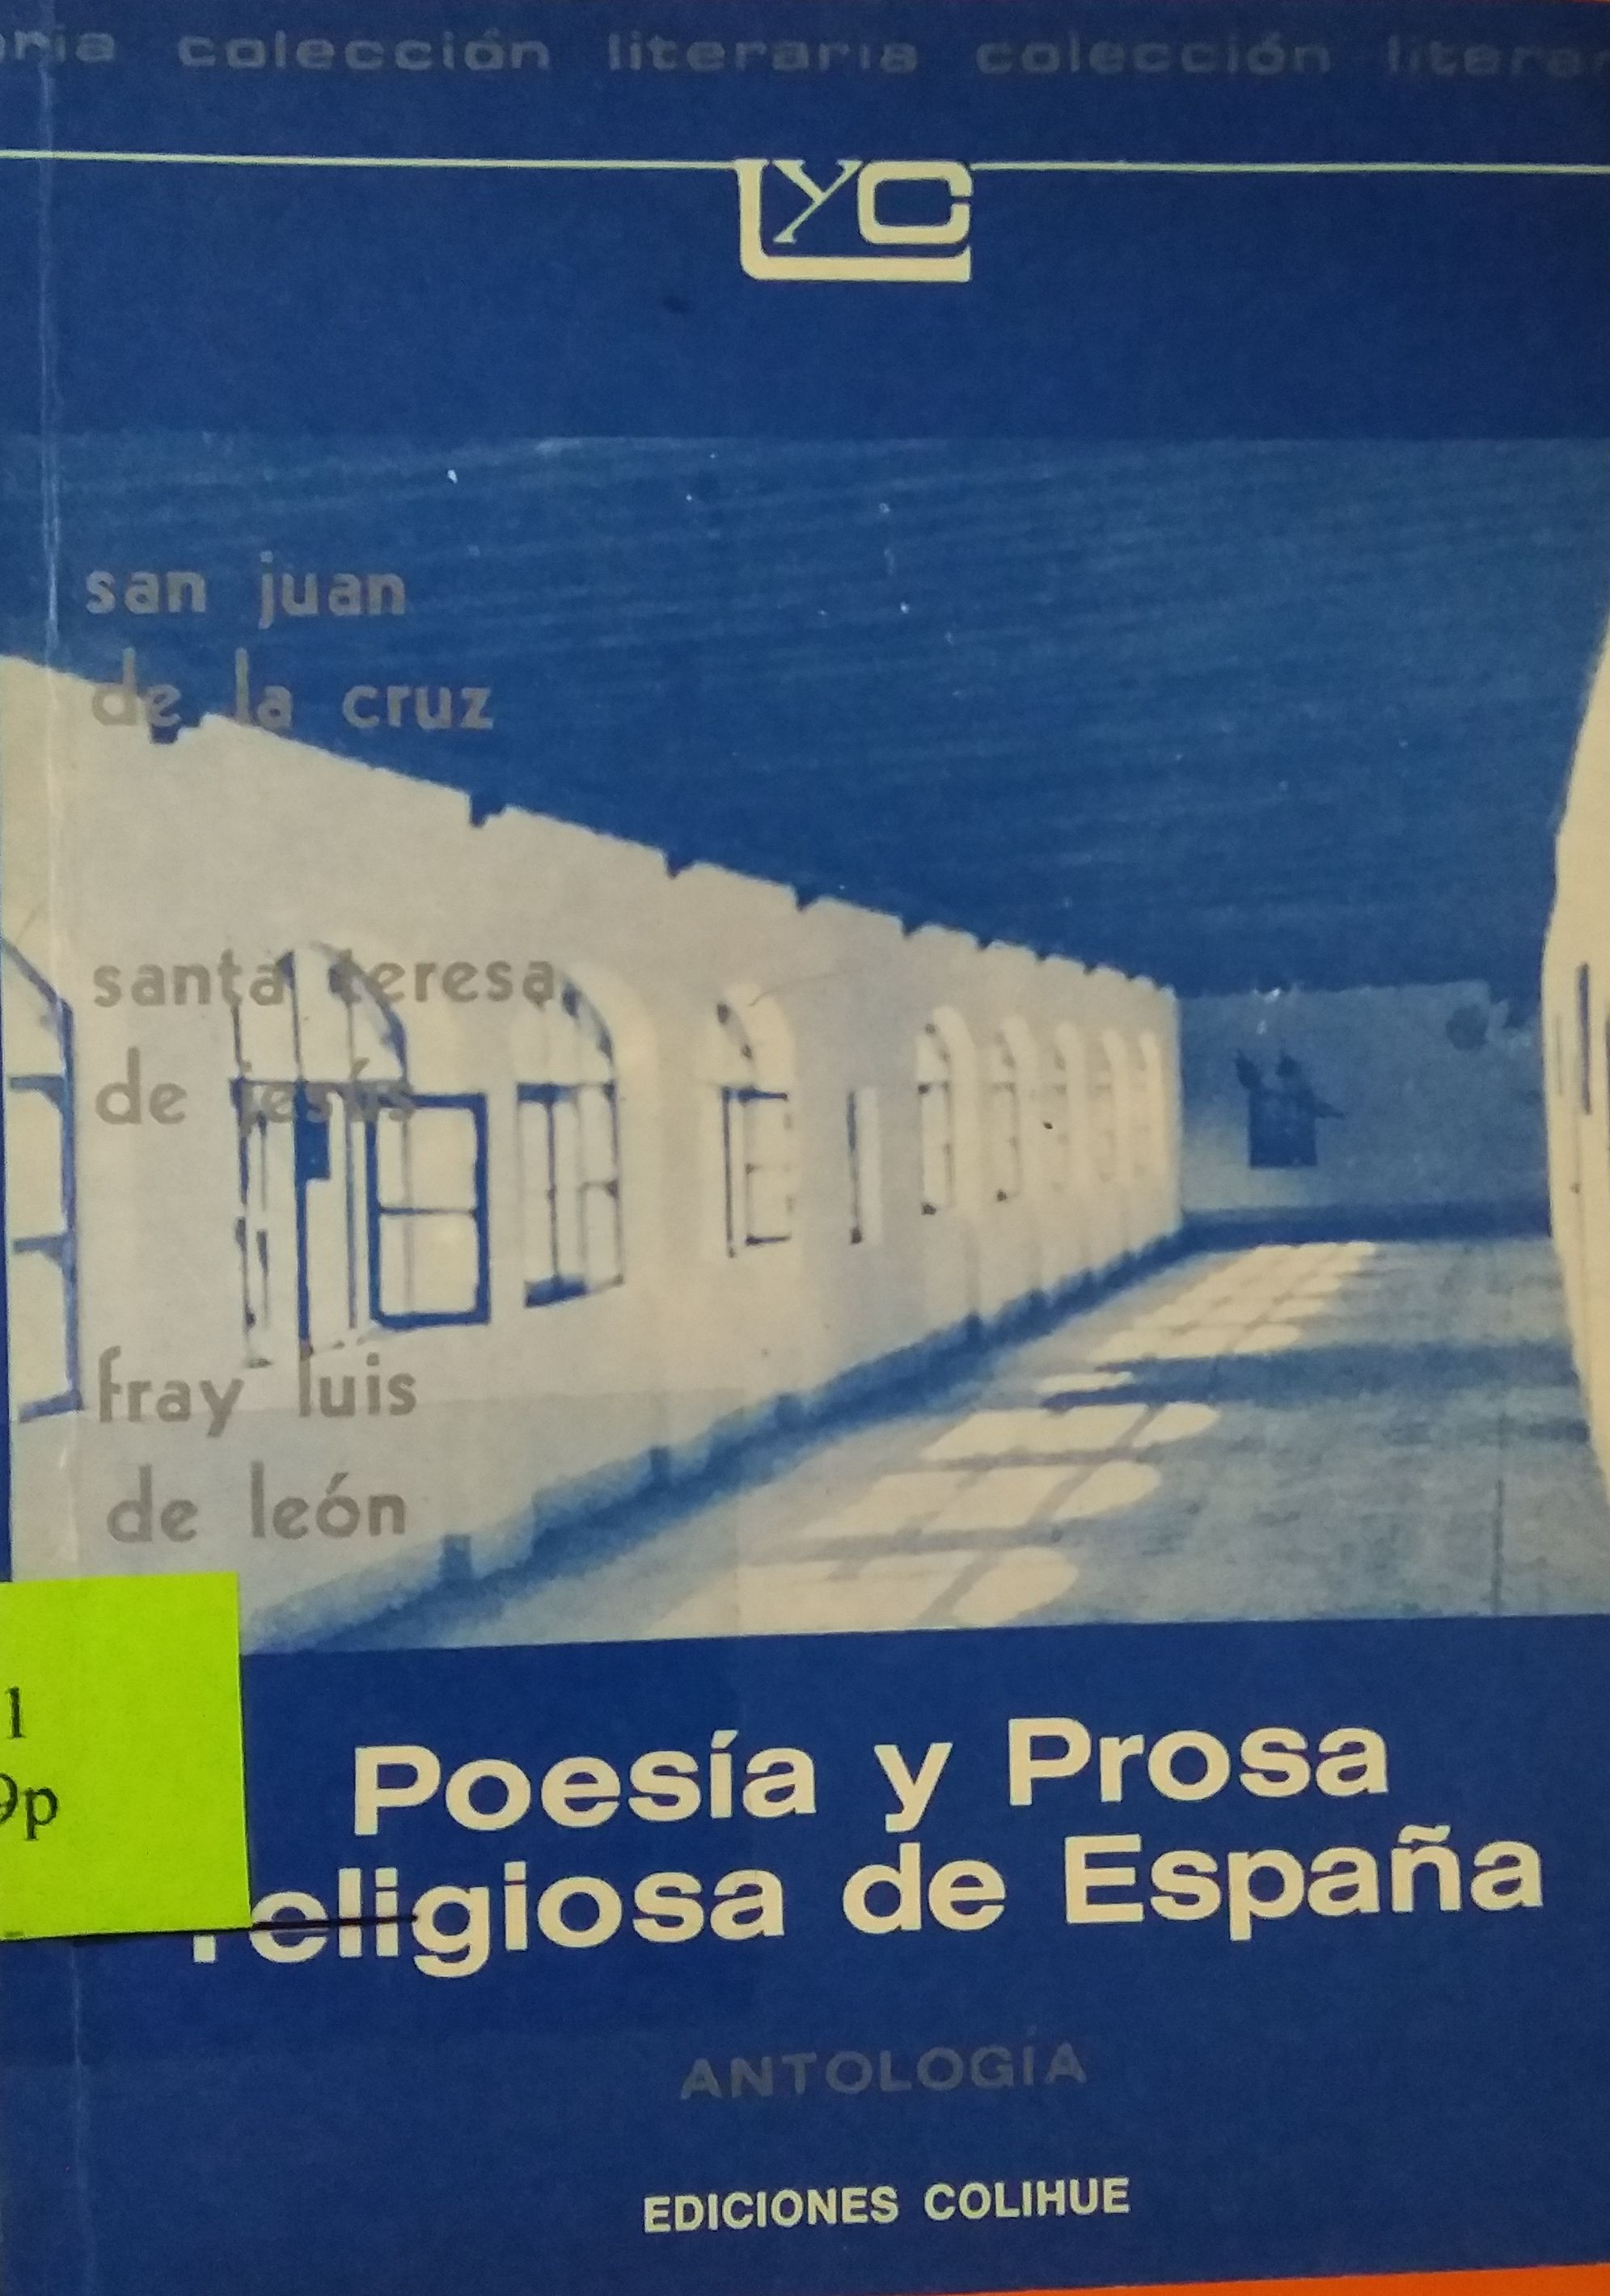 Poesia y Prosa Resligiosa de España